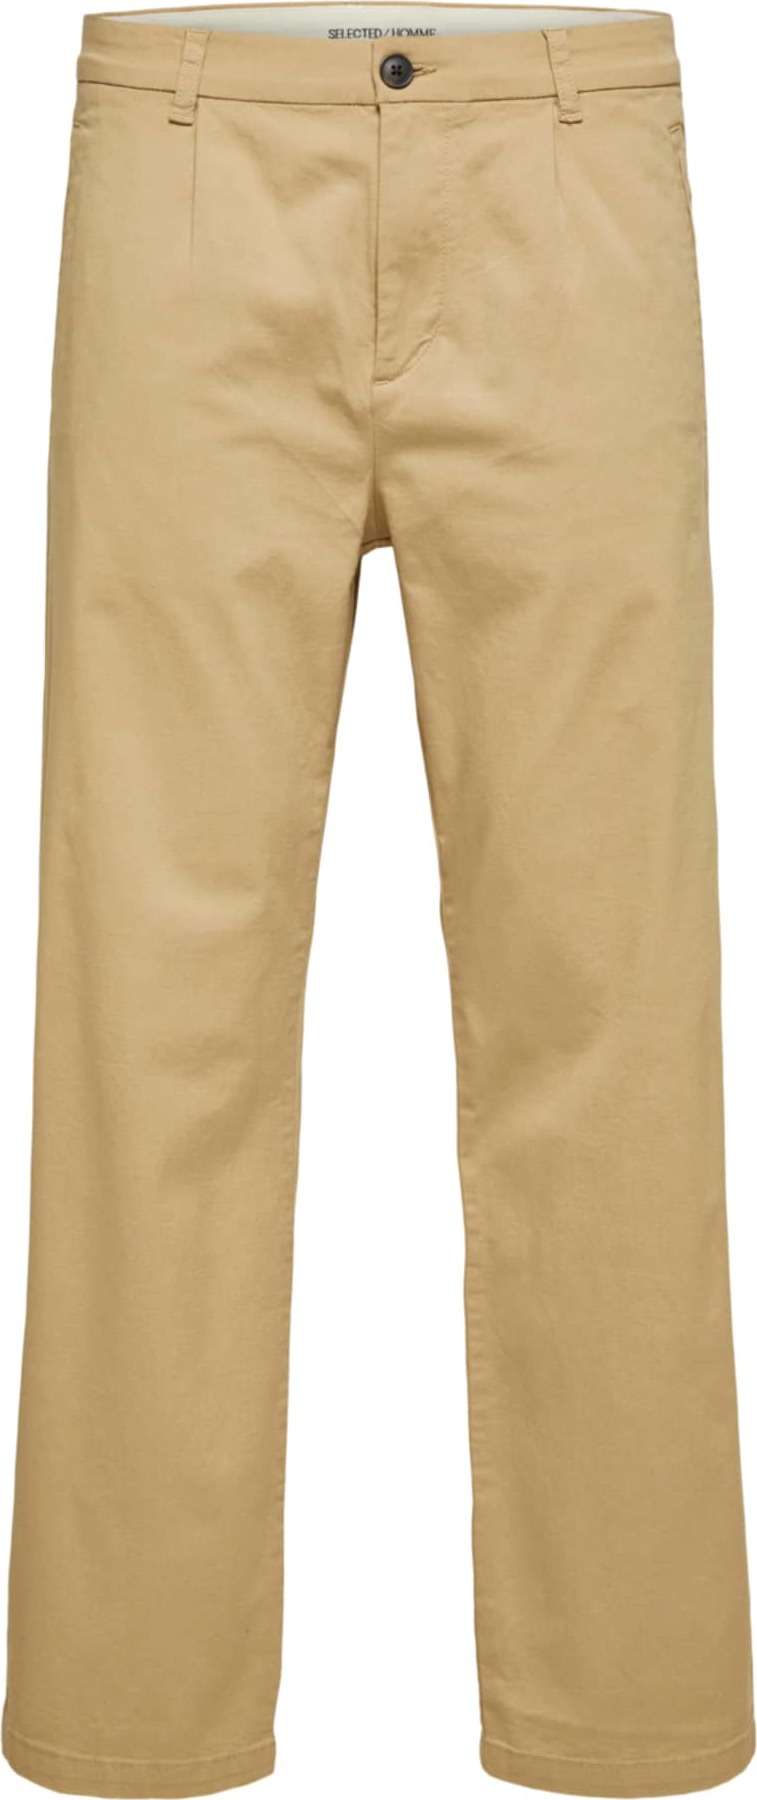 SELECTED HOMME Chino kalhoty světle hnědá